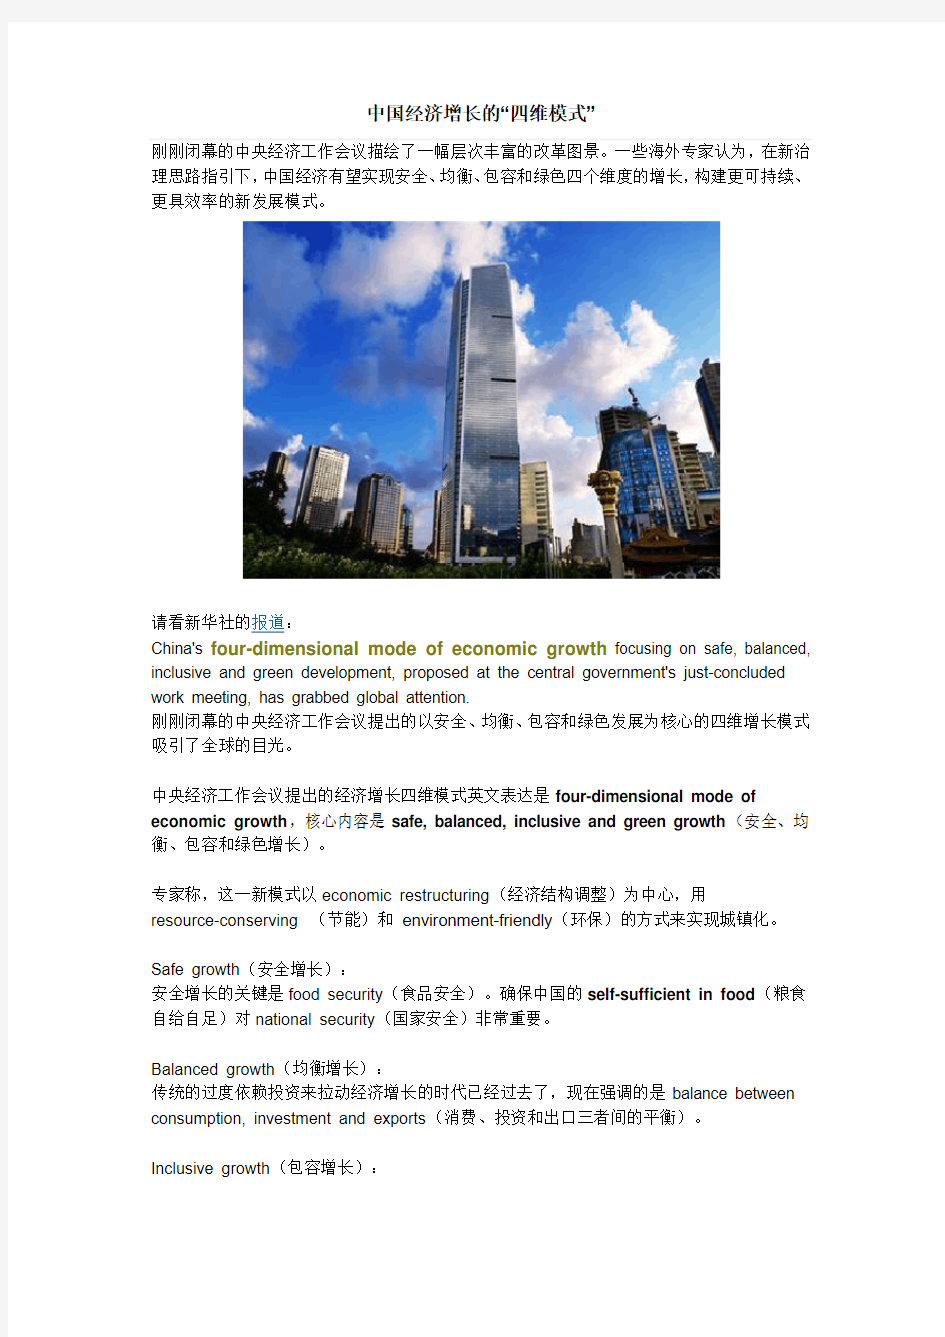 中国经济增长的四维模式-中英对照